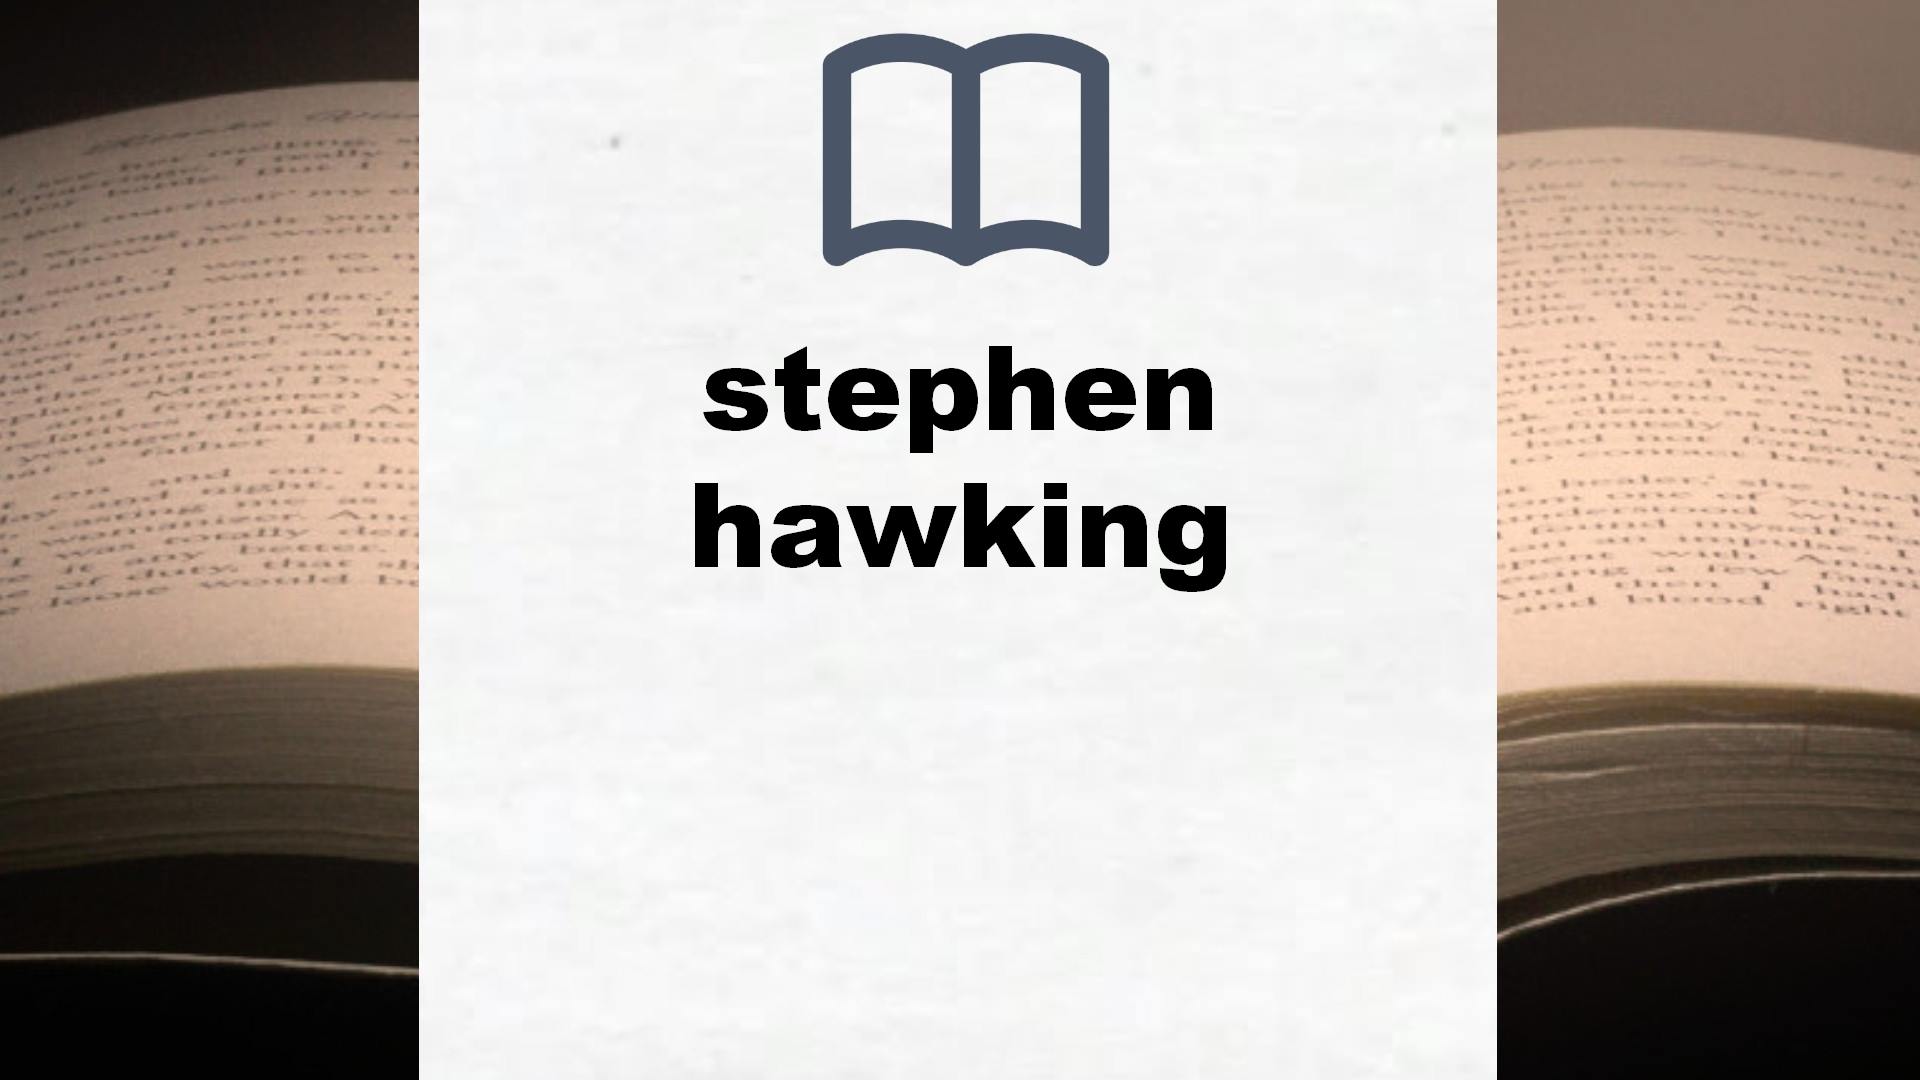 Libros sobre stephen hawking